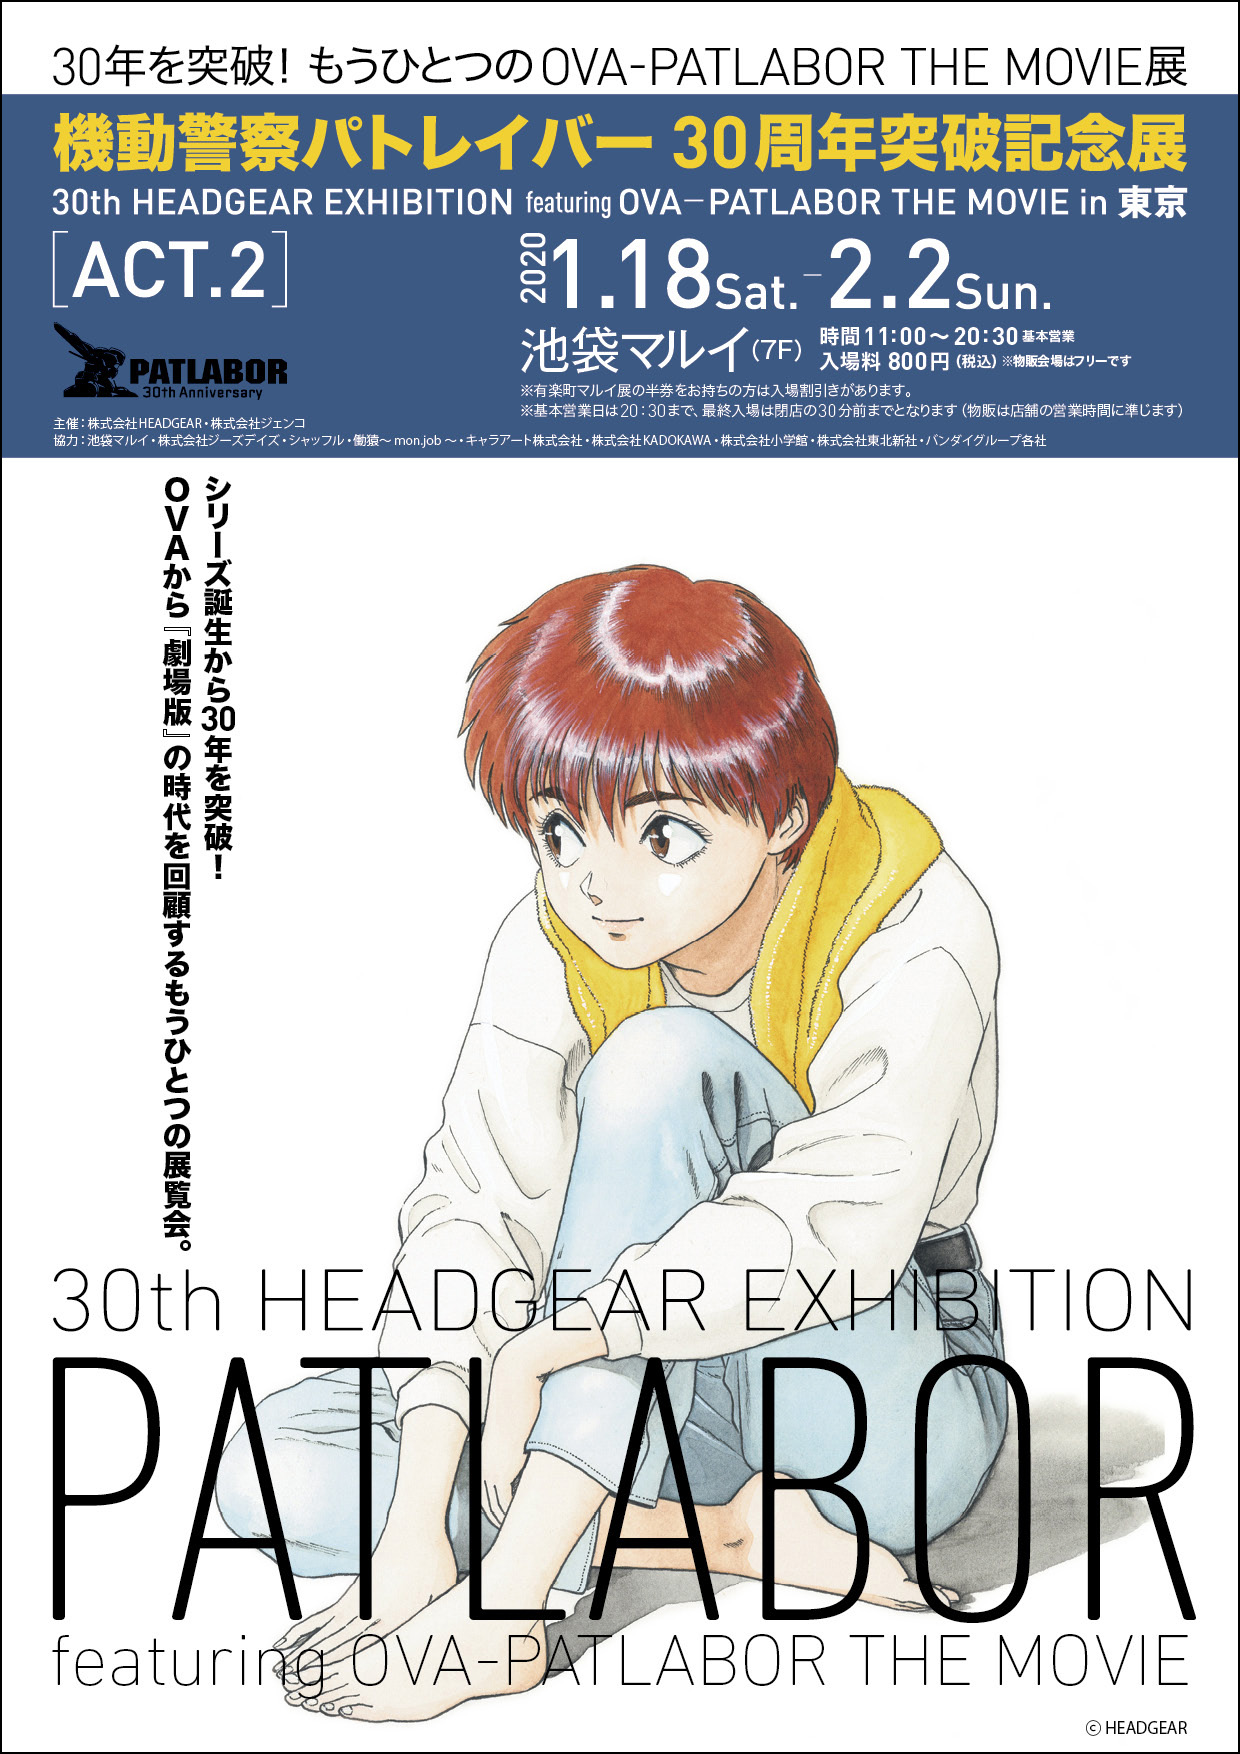 機動警察パトレイバー30周年突破記念展 30th Headgear Exhibition Featuring Early Days Patlabor The Movie 開催 年1月10日 エキサイトニュース